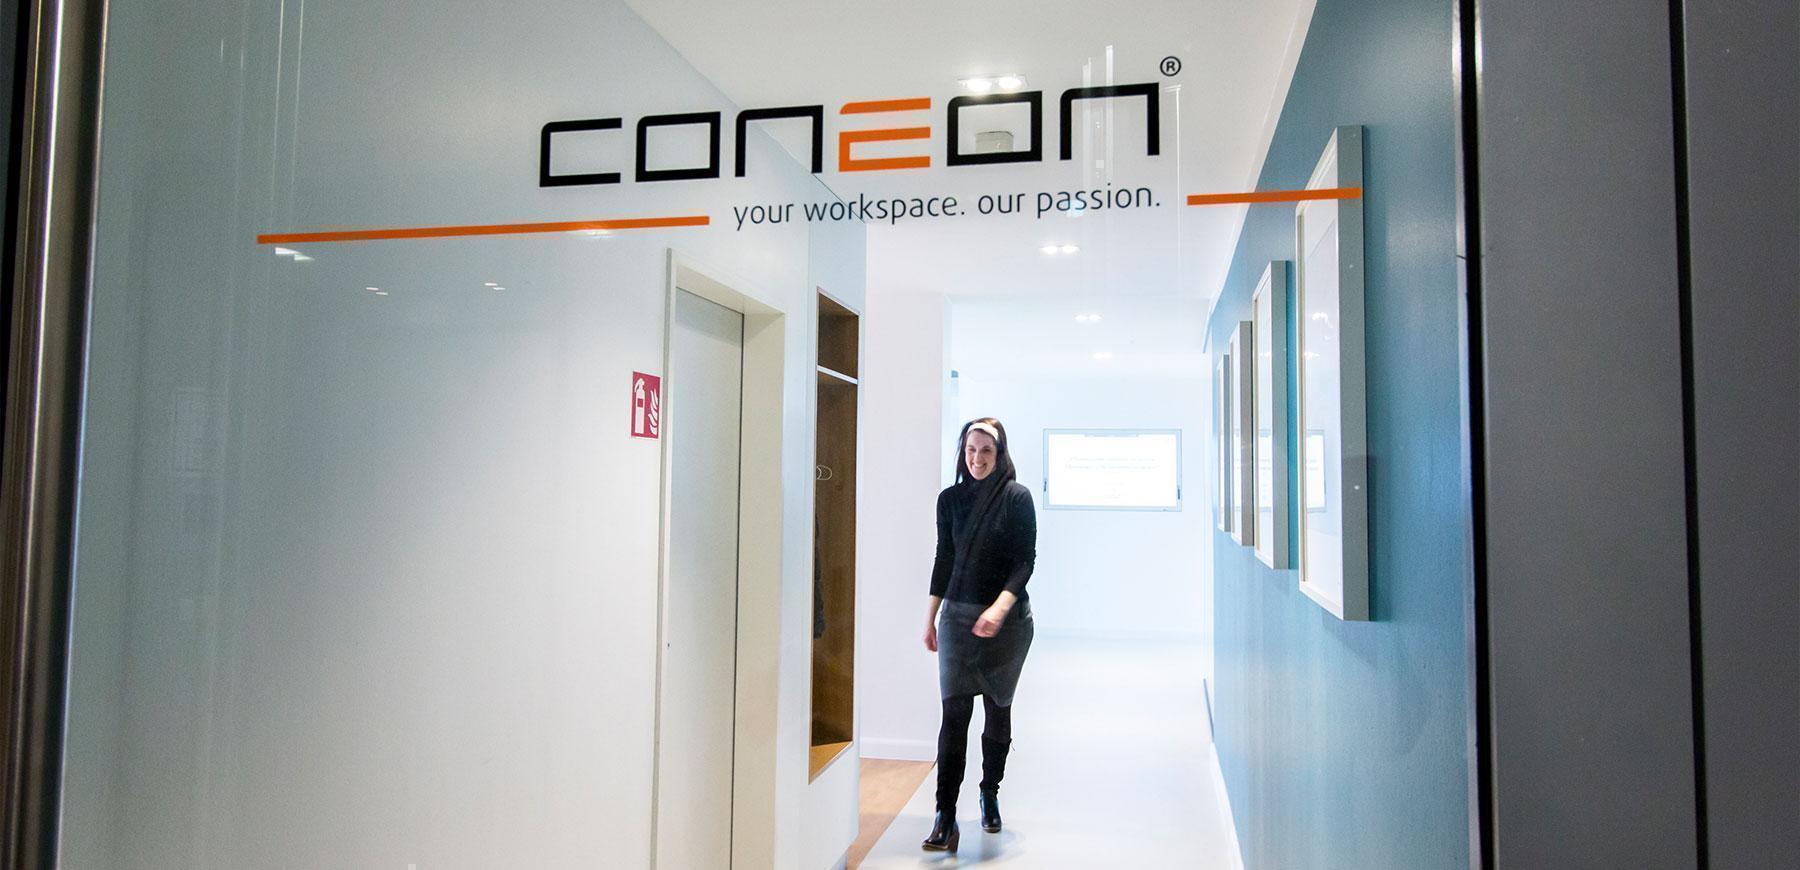 Das Coneon-Logo auf einer Glasscheibe mit einer Person, die im Hintergrund geht und lächelt.